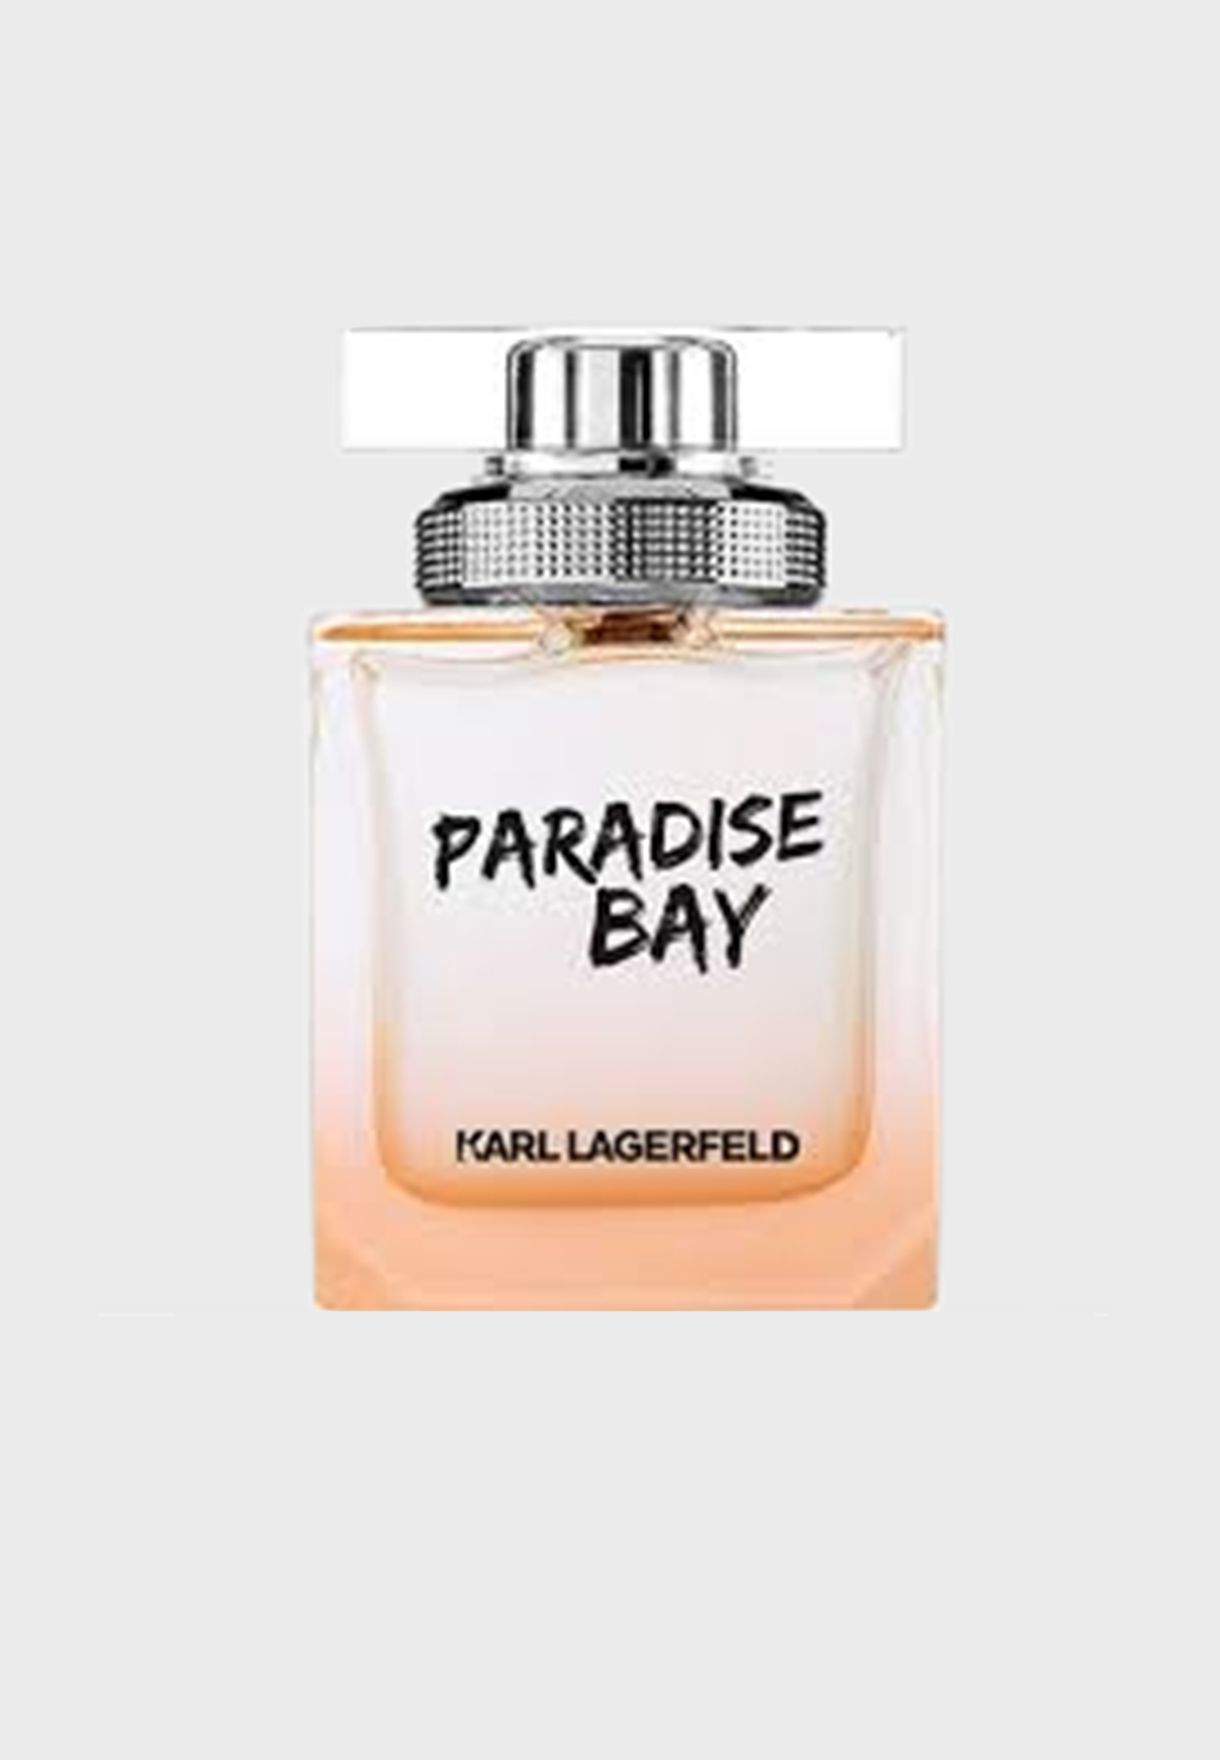 Paradise Bay Women Eau de Parfum 85ml